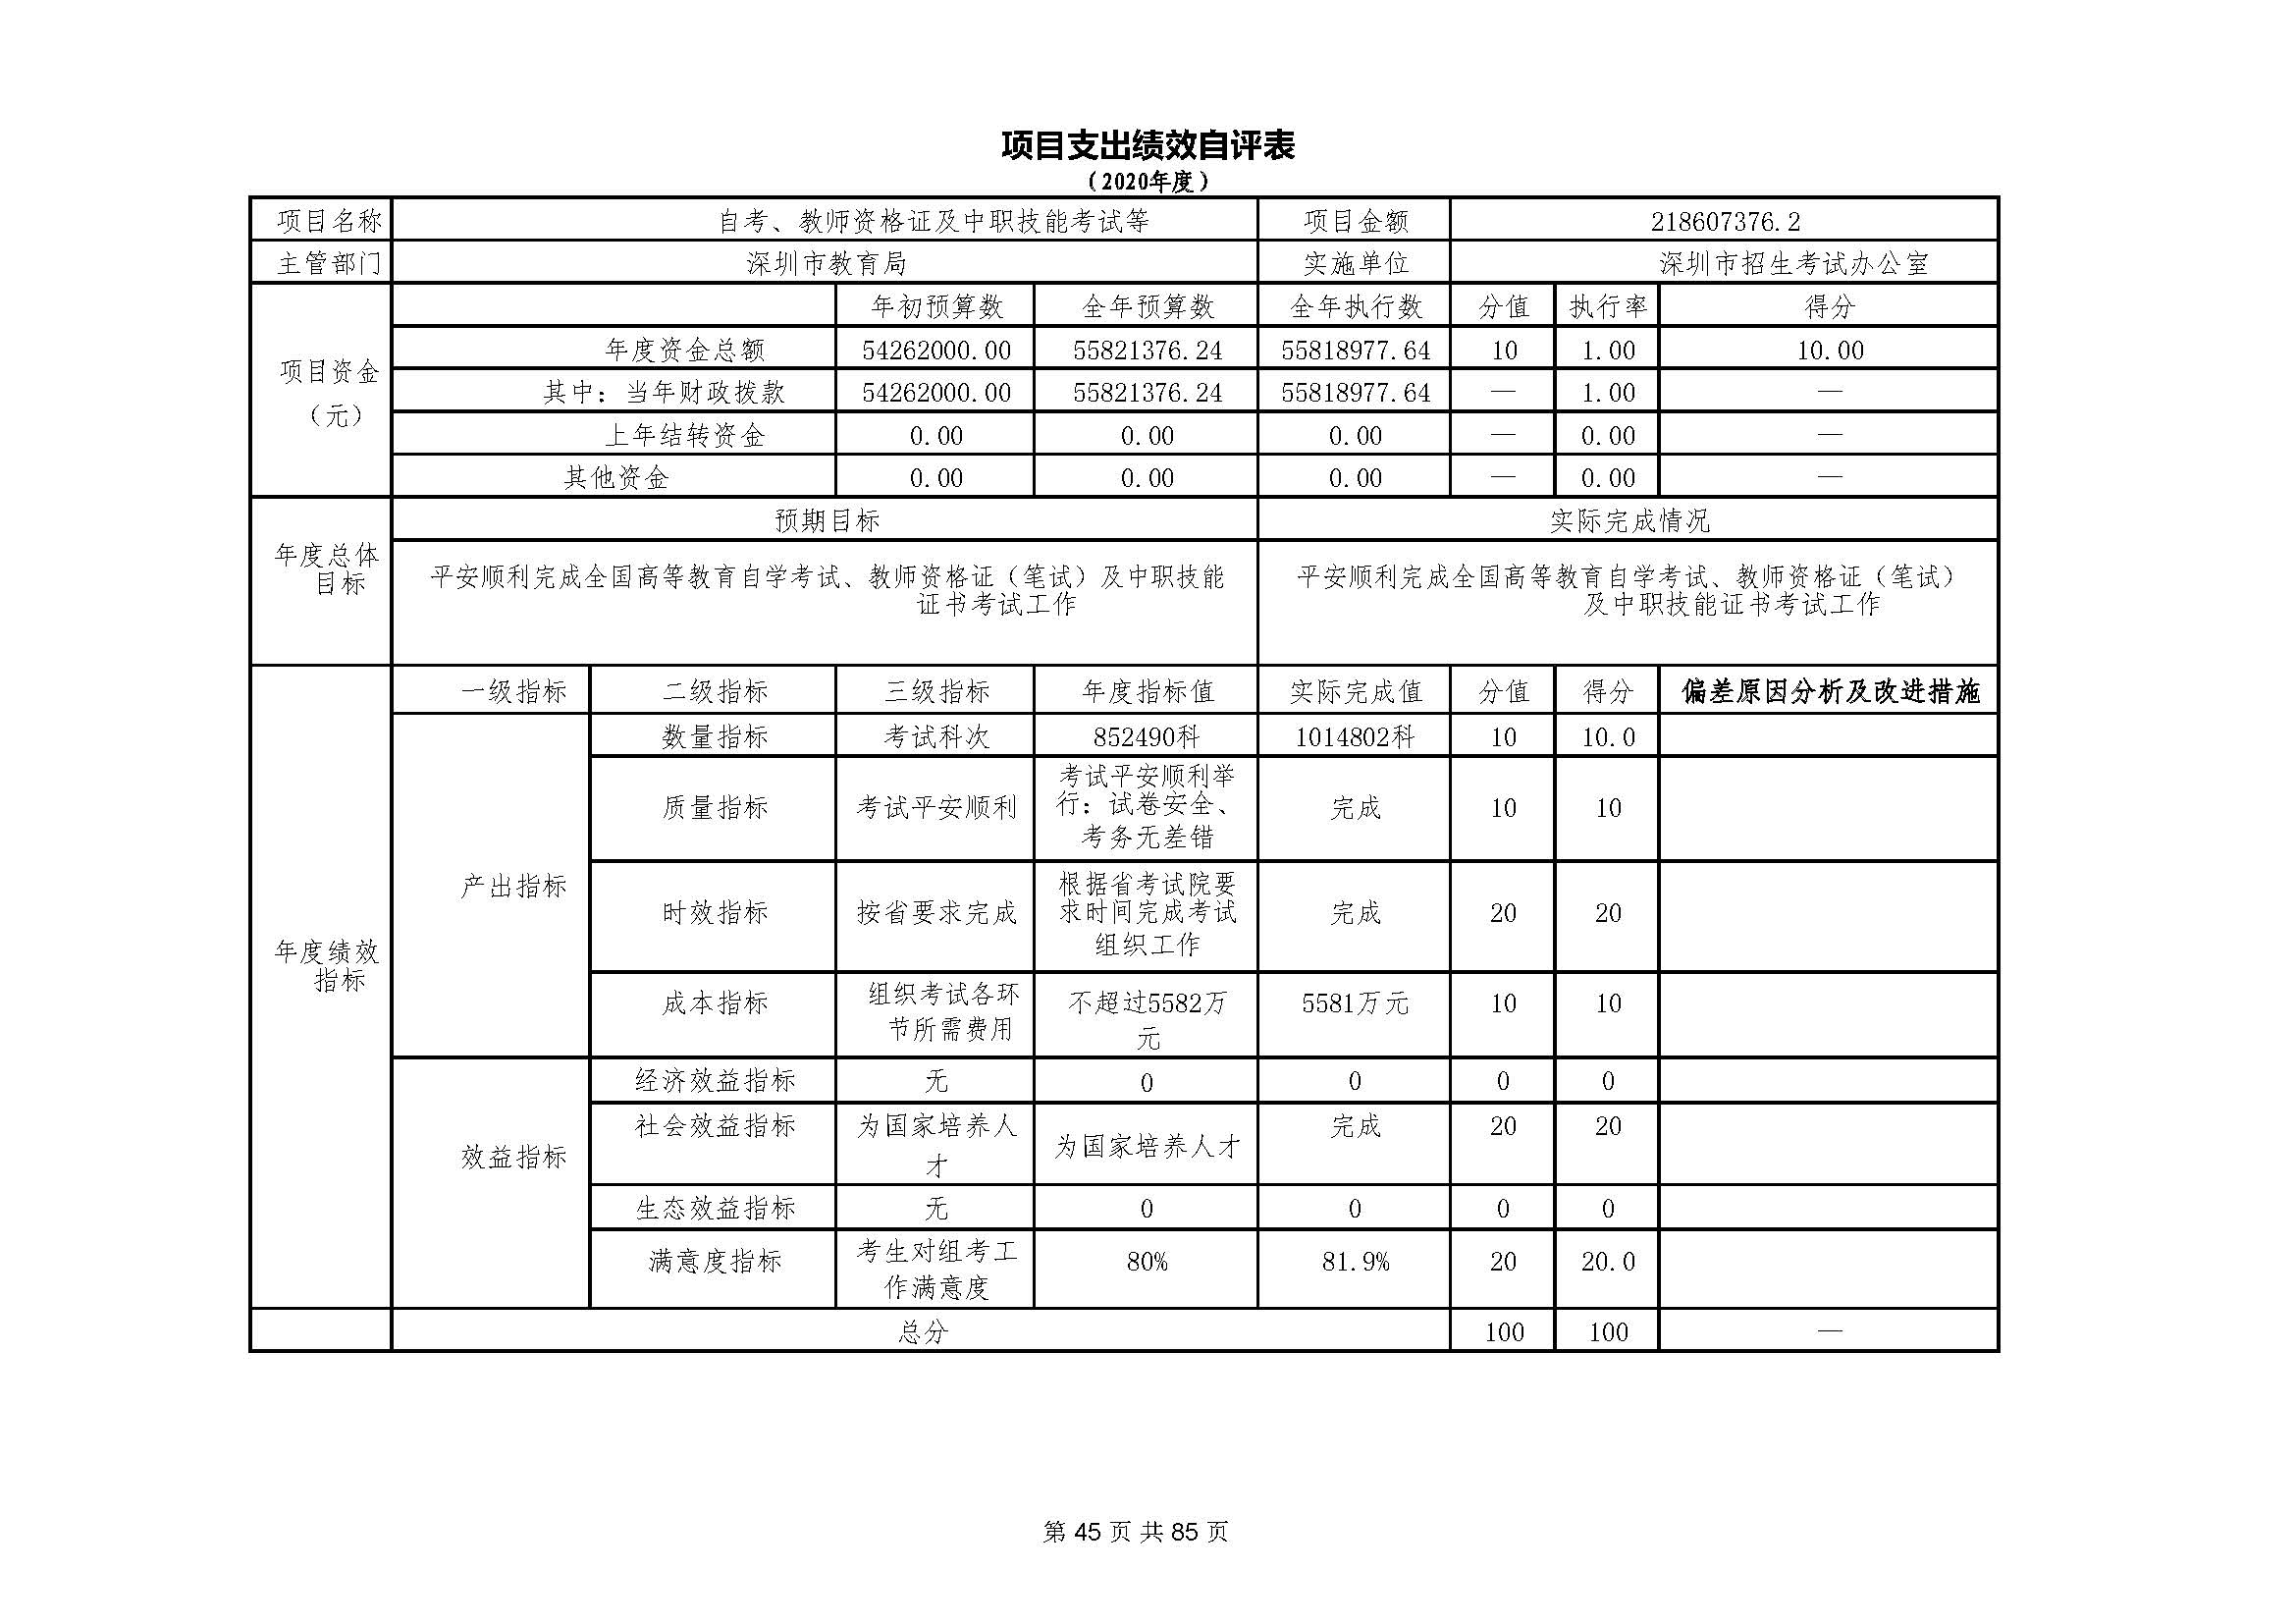 深圳市招生考试办公室2020年度部门决算_页面_46.jpg